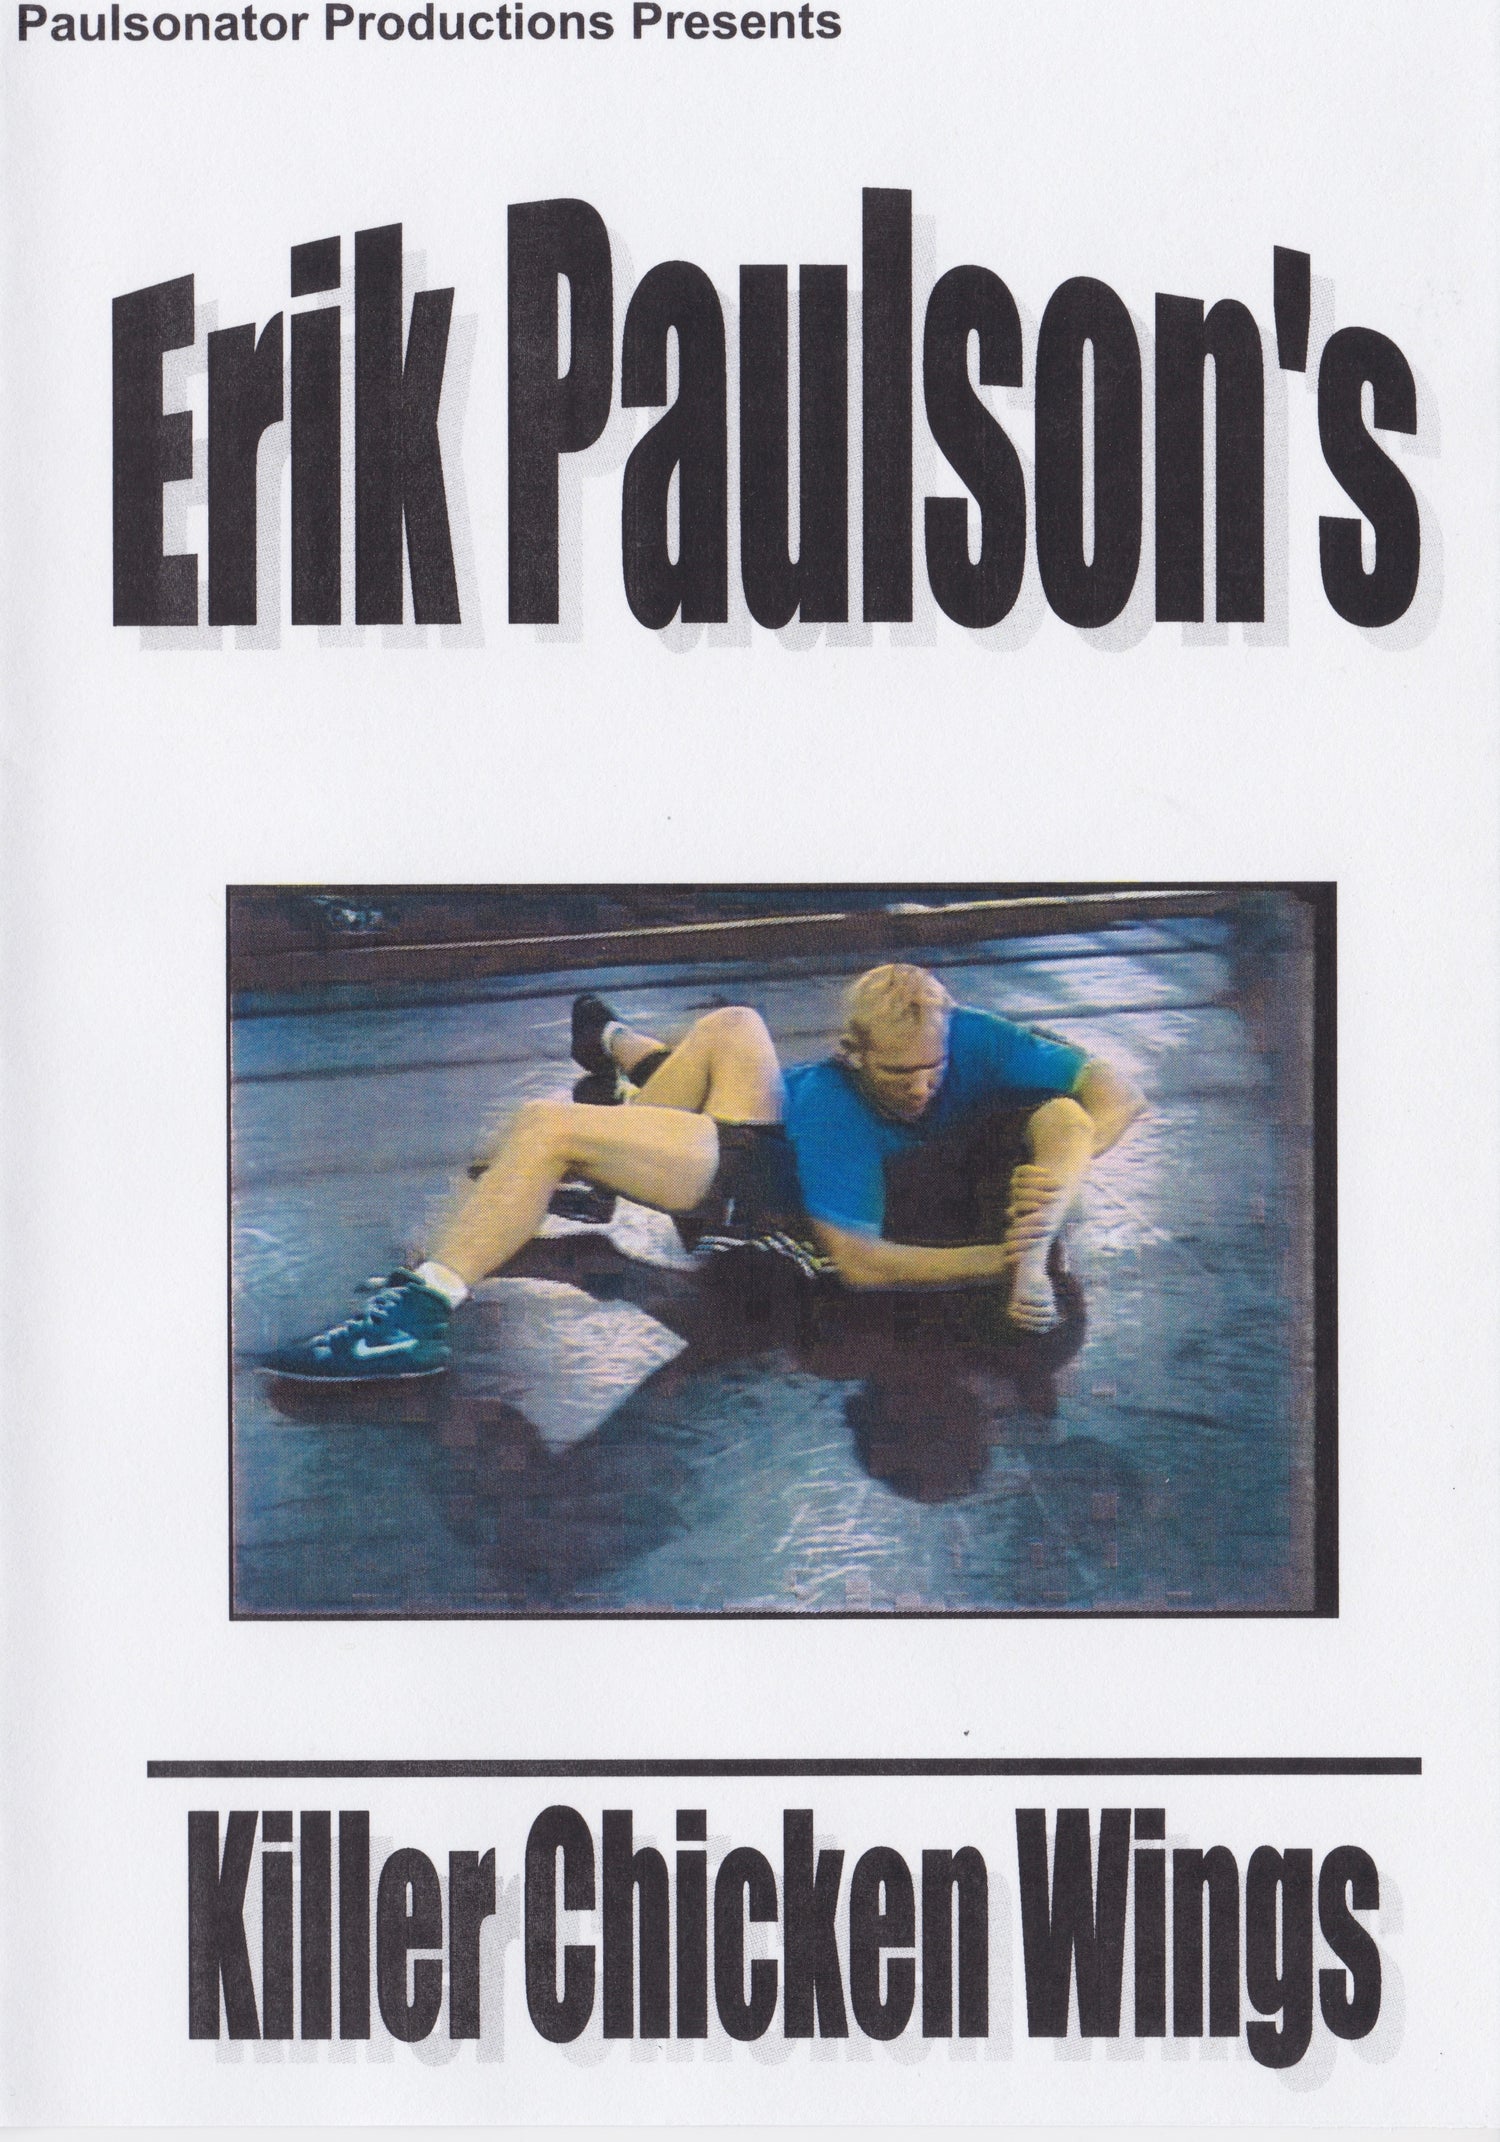 DVD de alitas de pollo asesinas de Erik Paulson